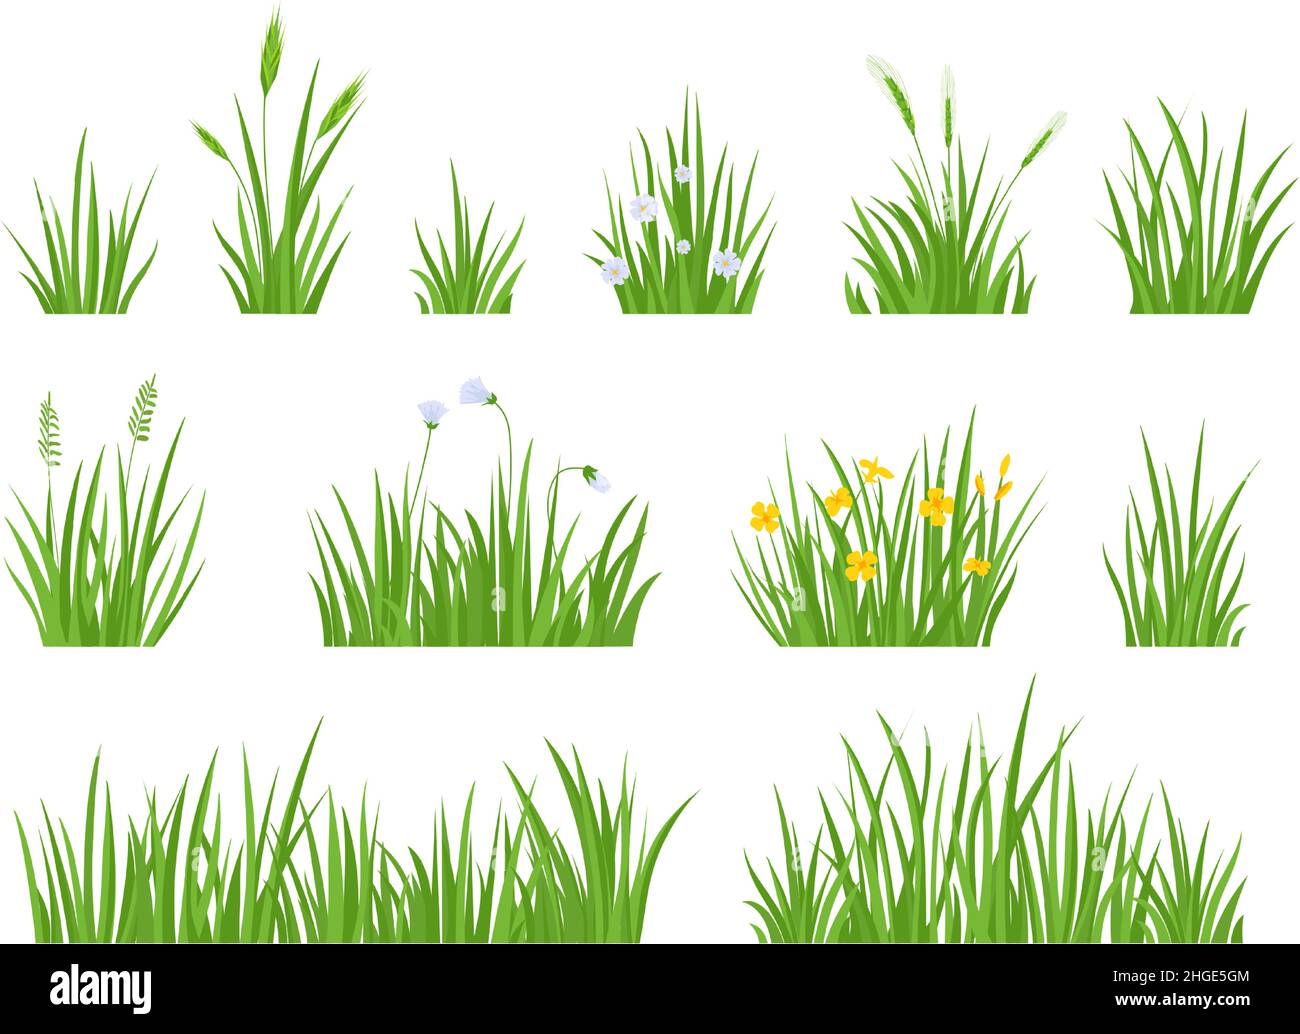 Herbe de prairie verte avec fleur, herbes et épis de pointes.Bordure horizontale de pelouse de jardin de printemps.Ensemble de vecteurs pour herbe naturelle fraîche du champ Illustration de Vecteur